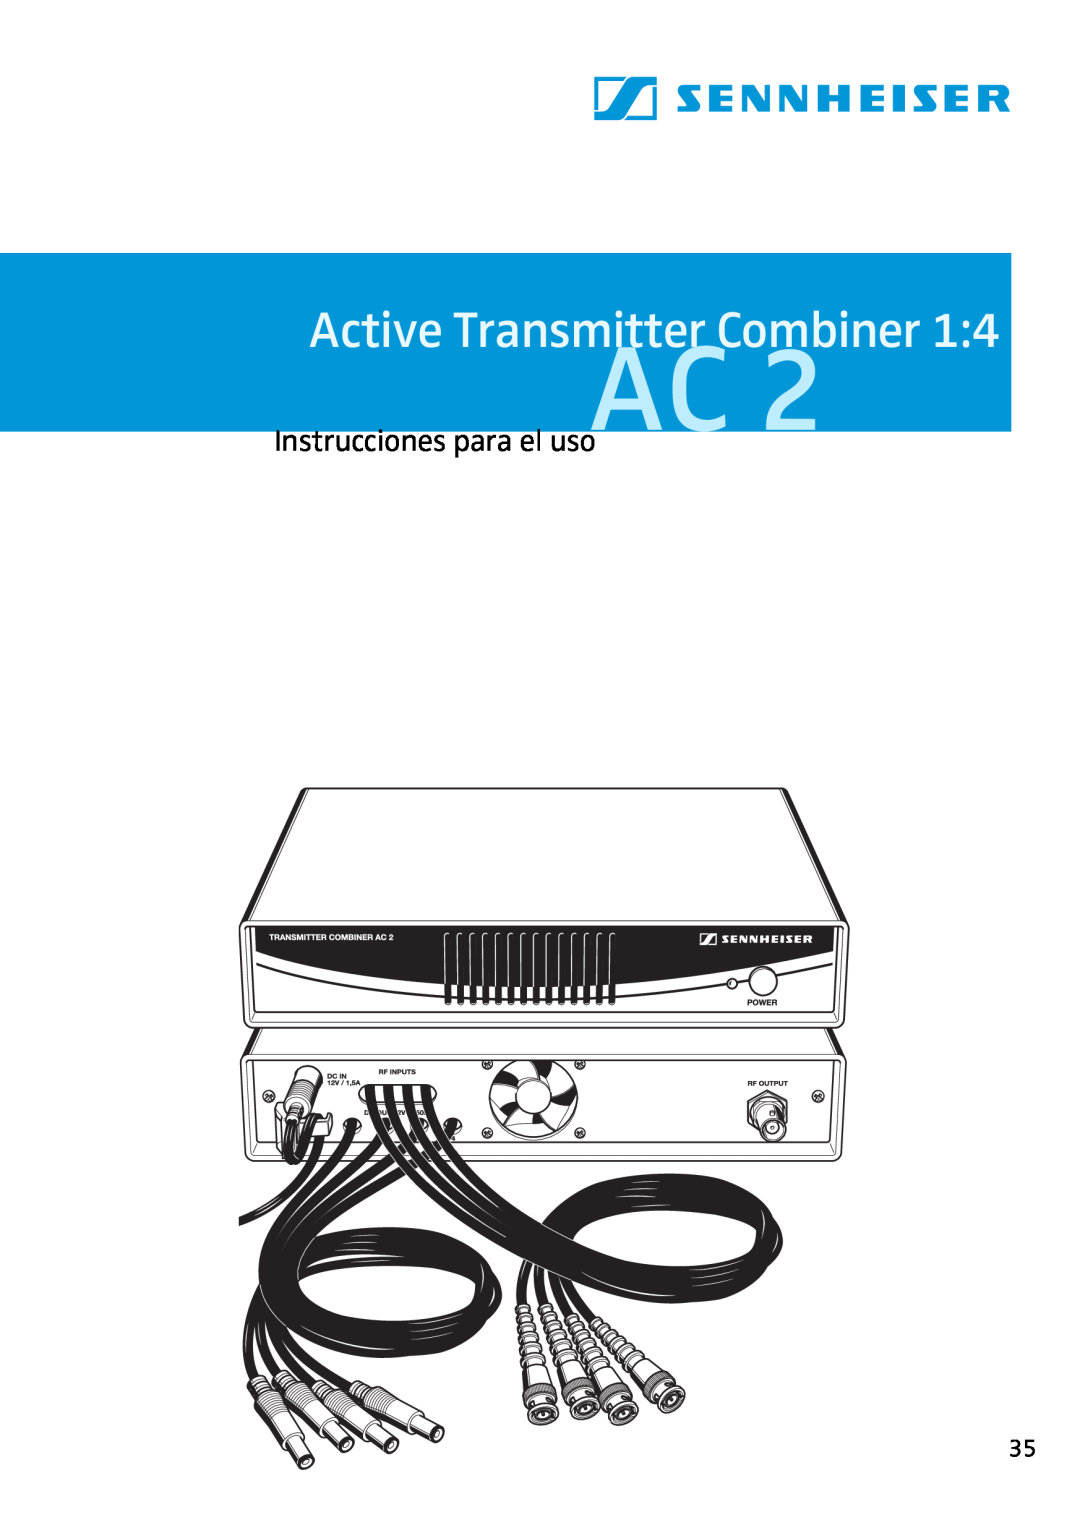 Sennheiser AC2 manual Instrucciones para el usoAC, Active Transmitter Combiner 